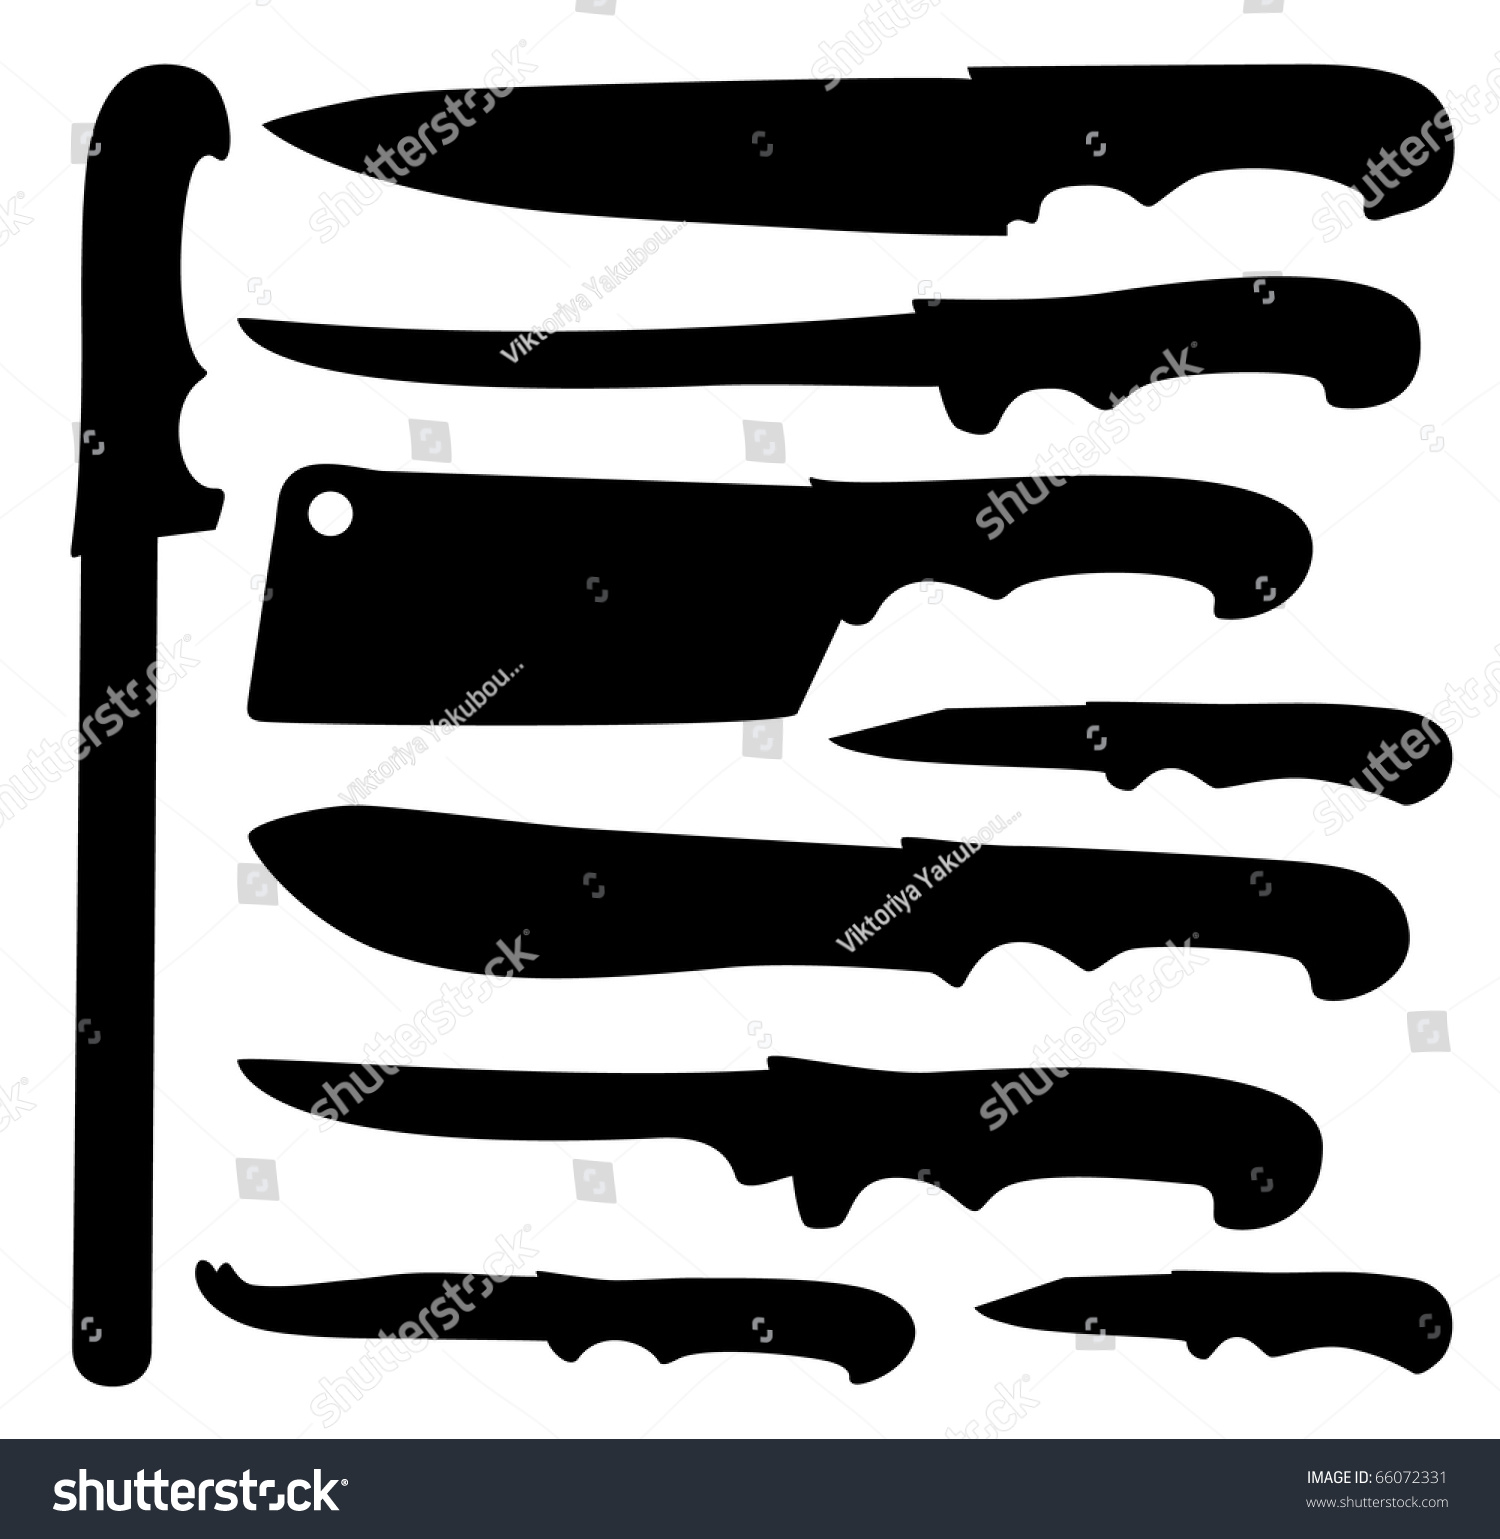 Knife Set Stock Vector Illustration 66072331 : Shutterstock